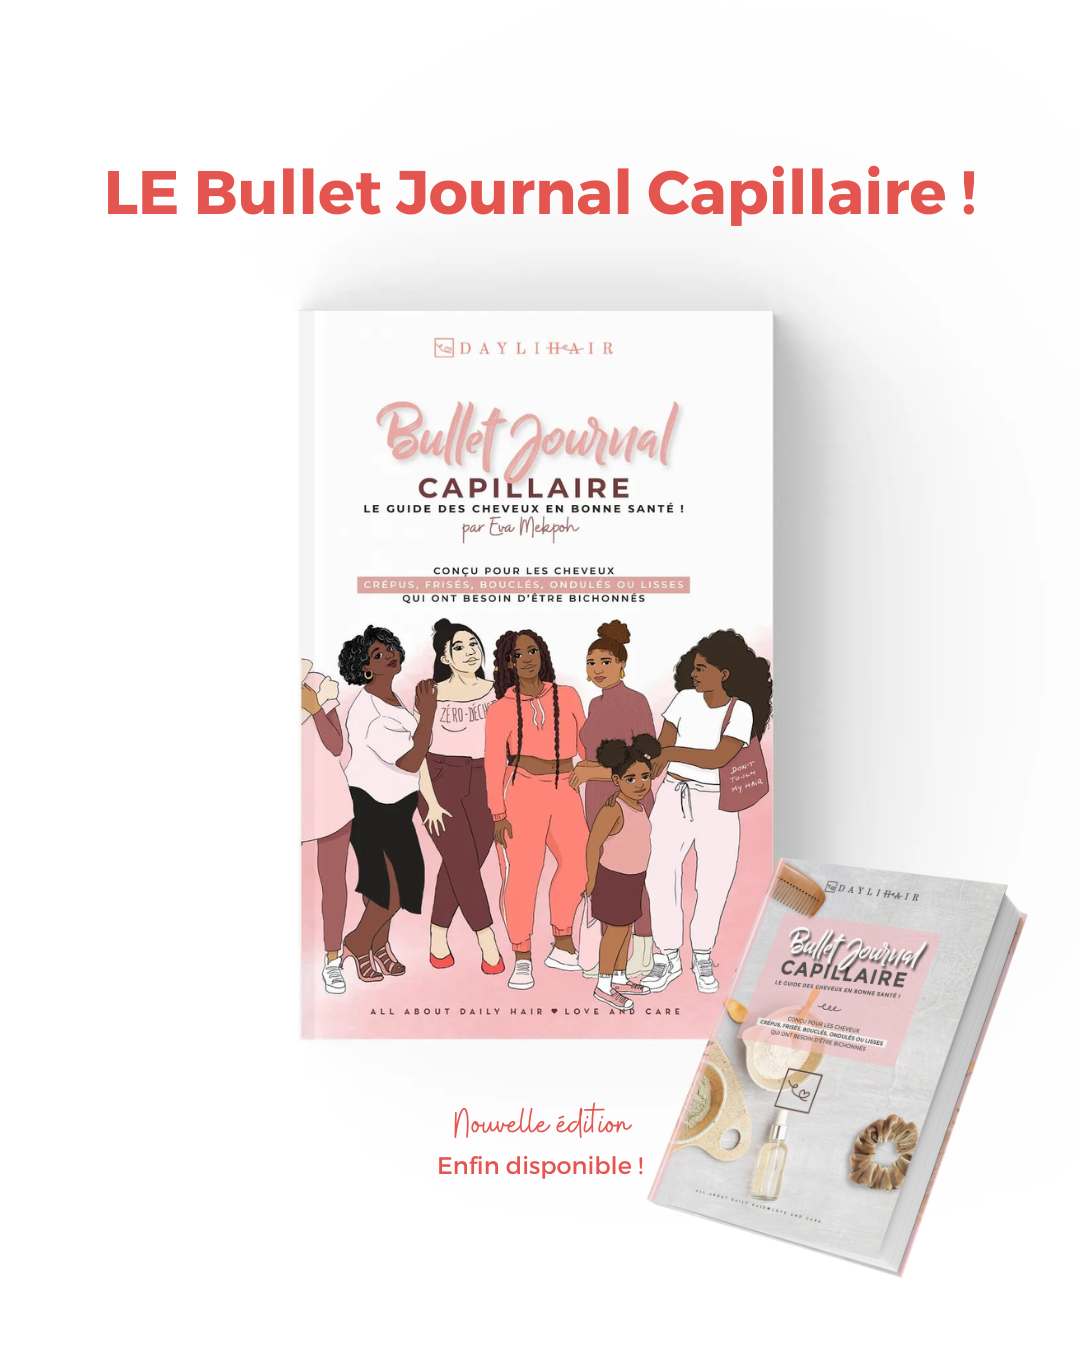 Le “Bullet Journal Capillaire”